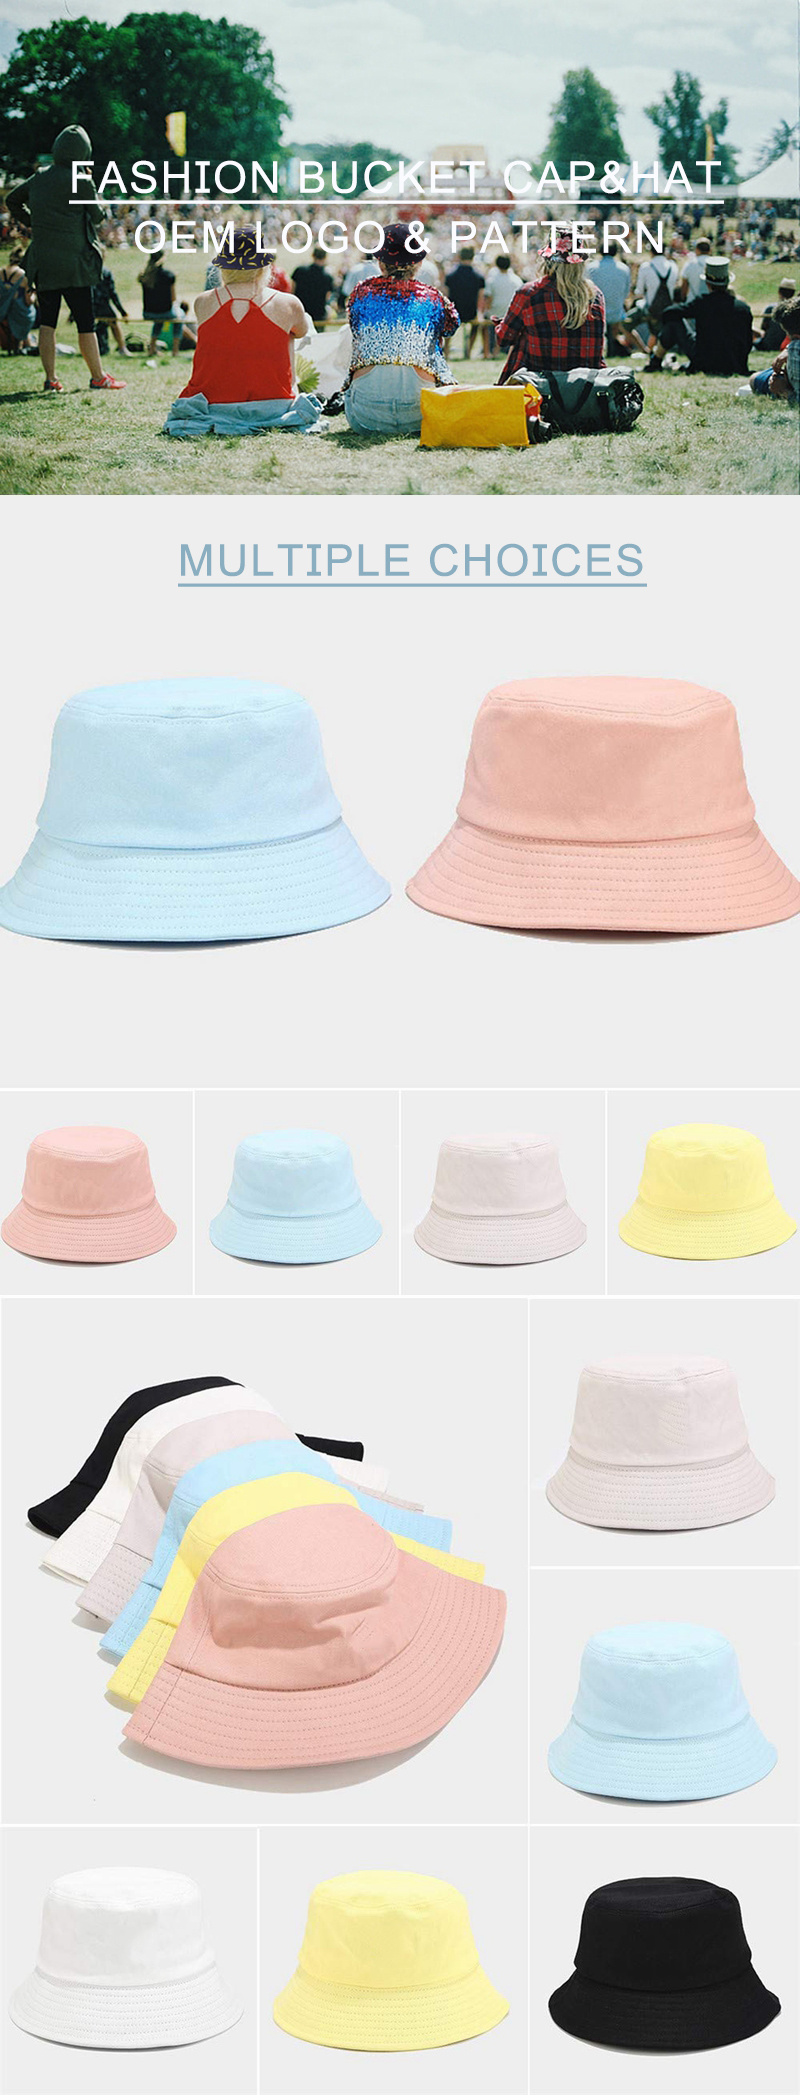 Custom Blank Distressed Bucket Cap and Vintage Fisherman Hat